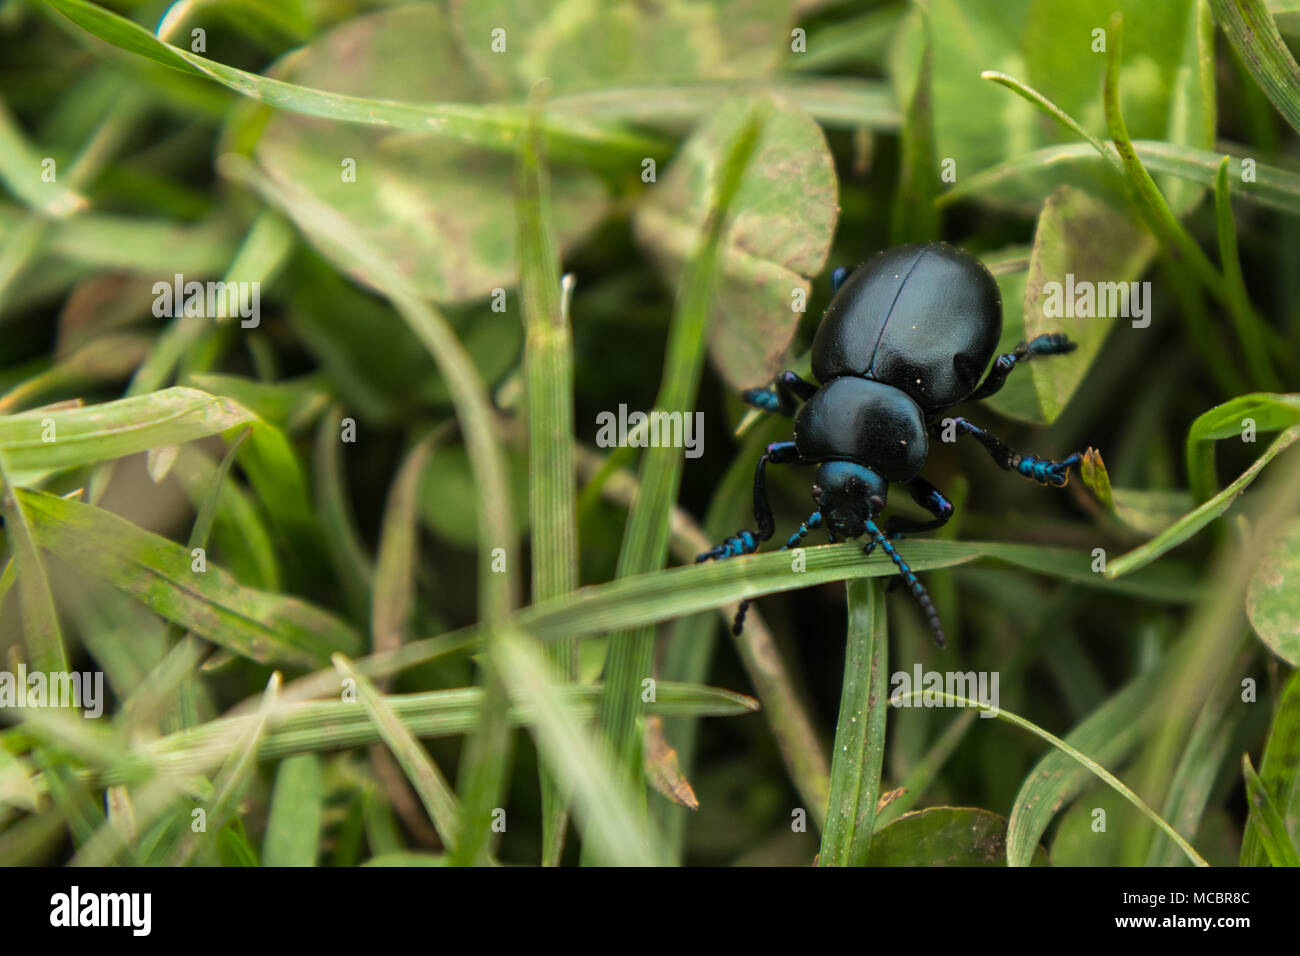 Nero dal naso sanguinante Beetle lottando per camminare sull'erba con blu piedi iridescenti, atenea e la testa. Foto Stock